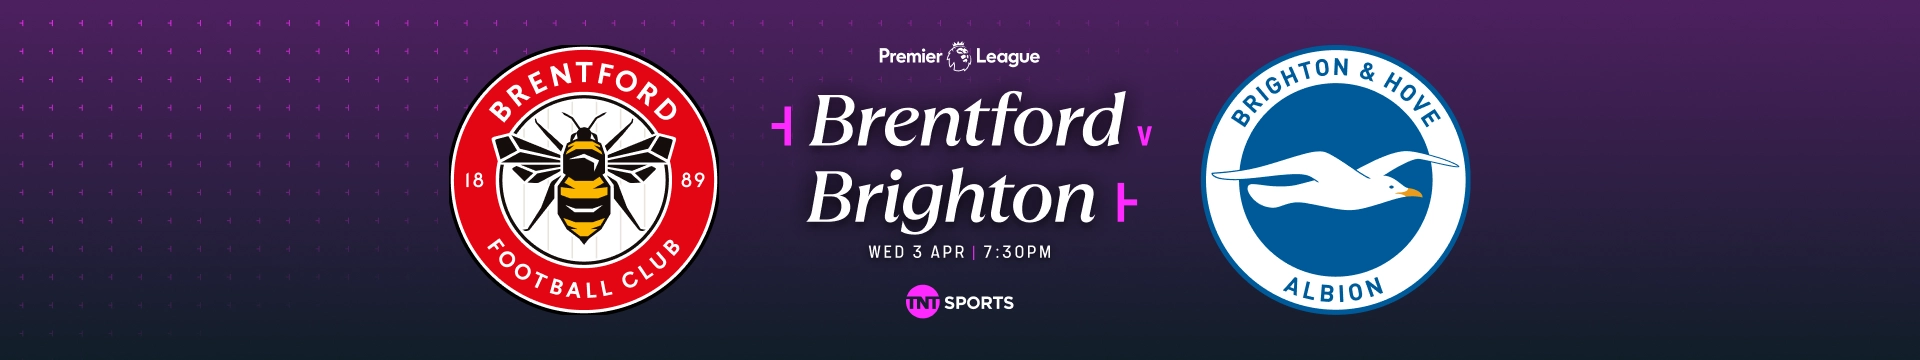 Brentford v Brighton Wednesday 3 April at 7:30pm